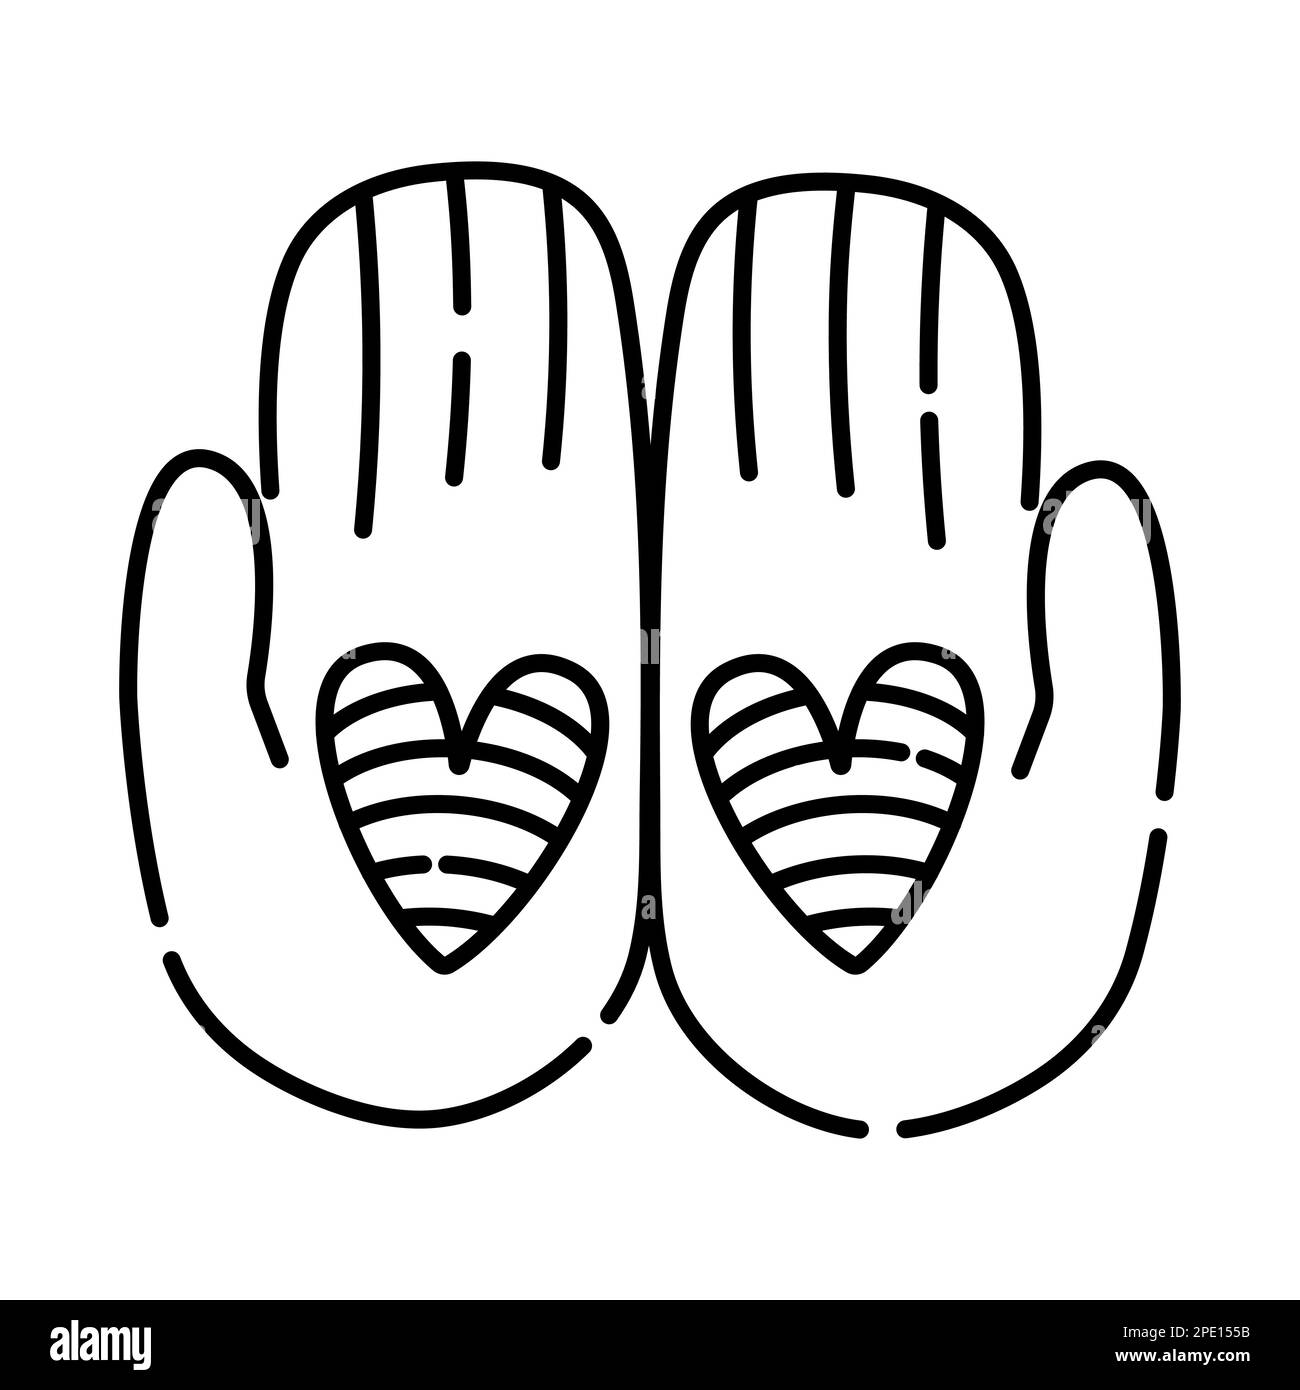 Due mani con cuori, simbolo di fiducia, illustrazione con linee nere vettoriali Illustrazione Vettoriale